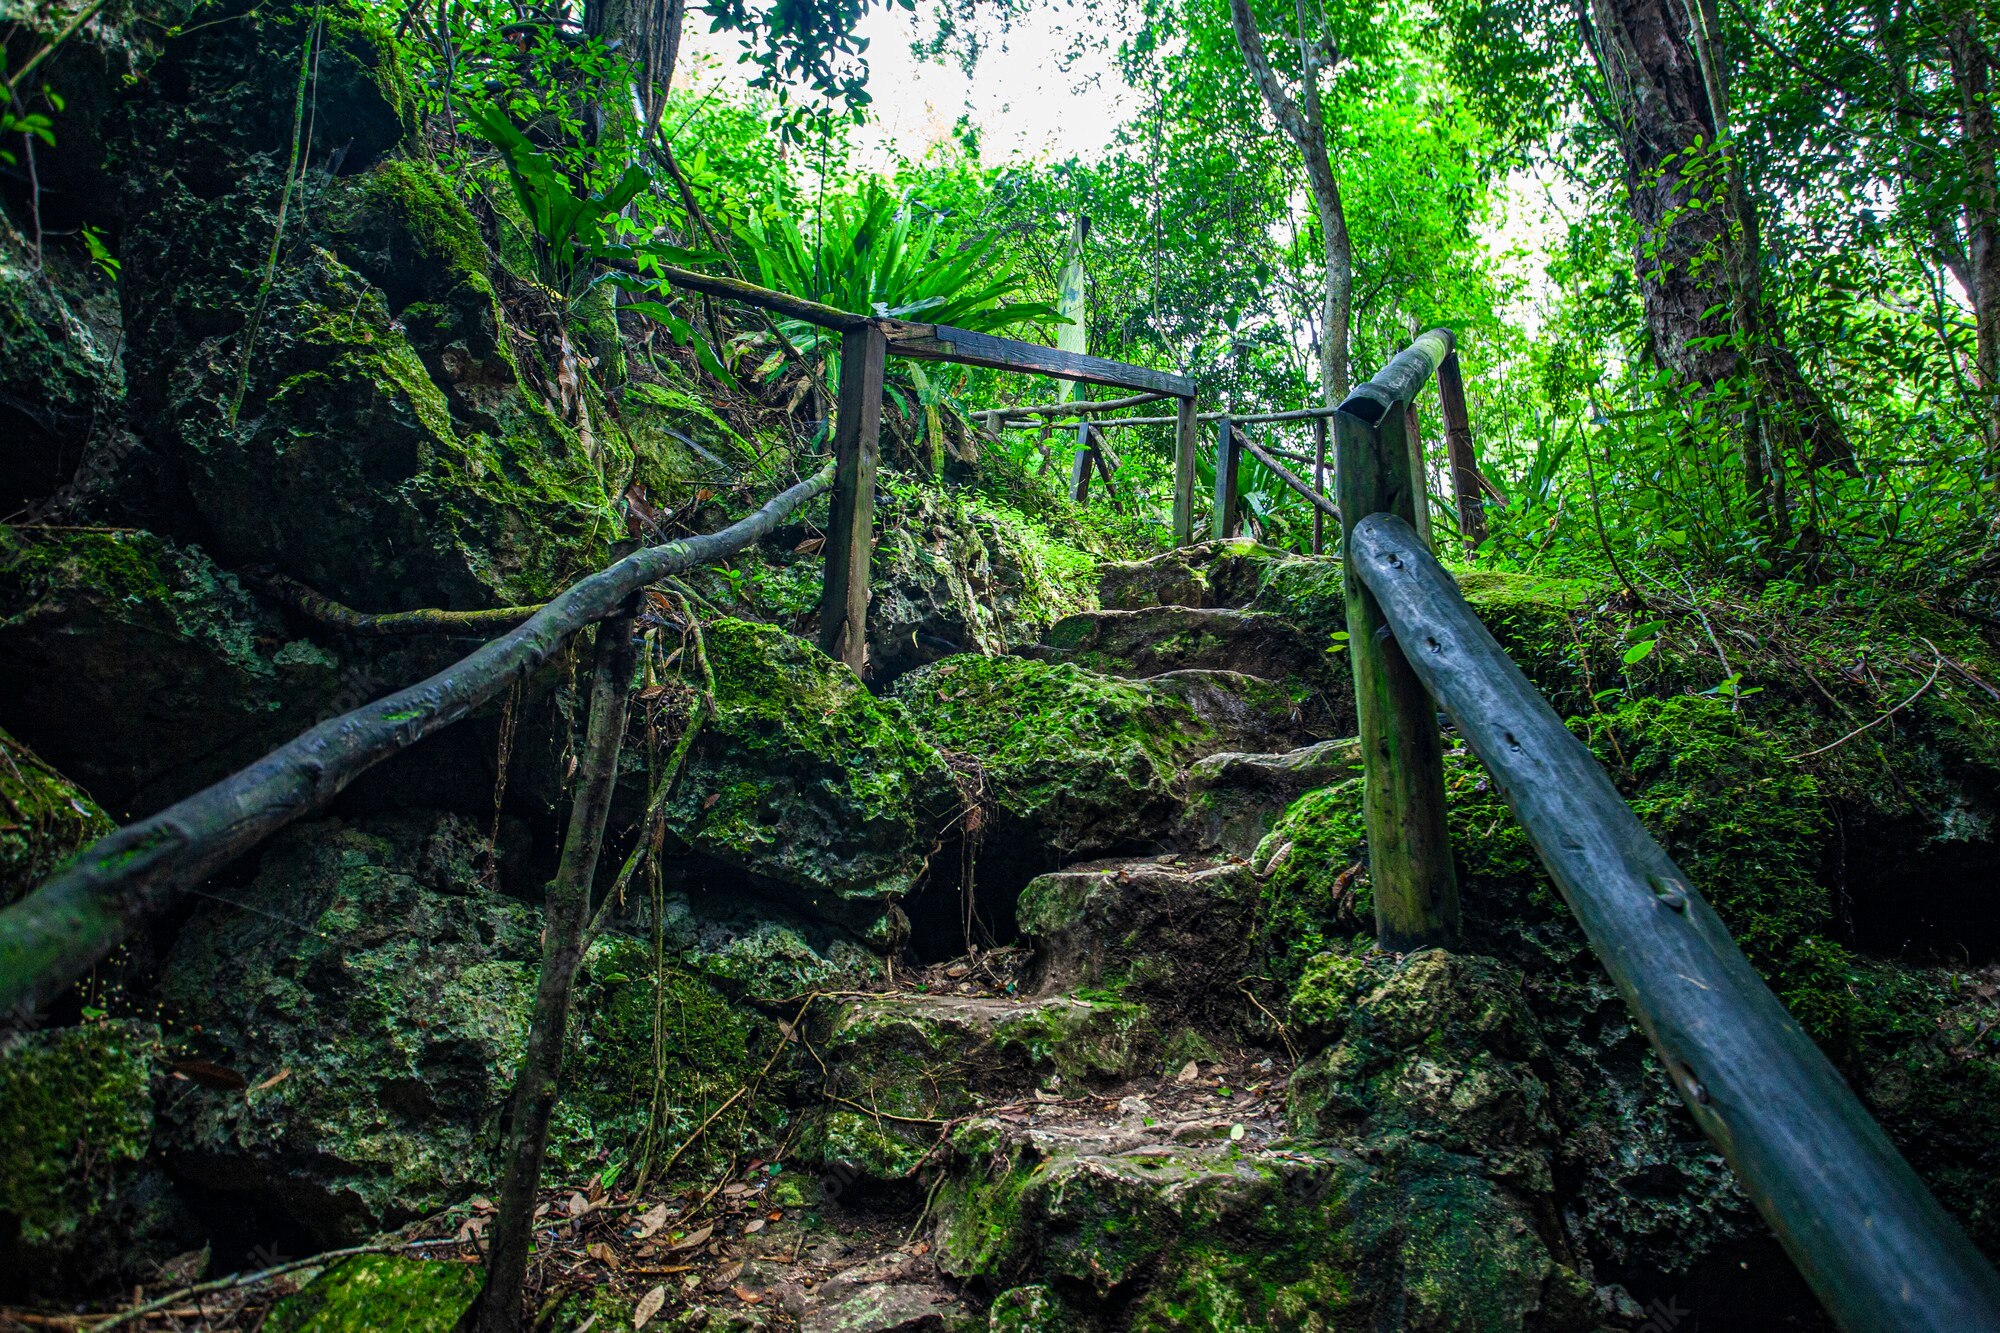 parque-nacional-cotubanama-republica-dominicana-seccion-padre-nuestro-vegetacion-tipica-interior-canteras-como-cueva-padre-nuestro-cueva-chico_466739-4215